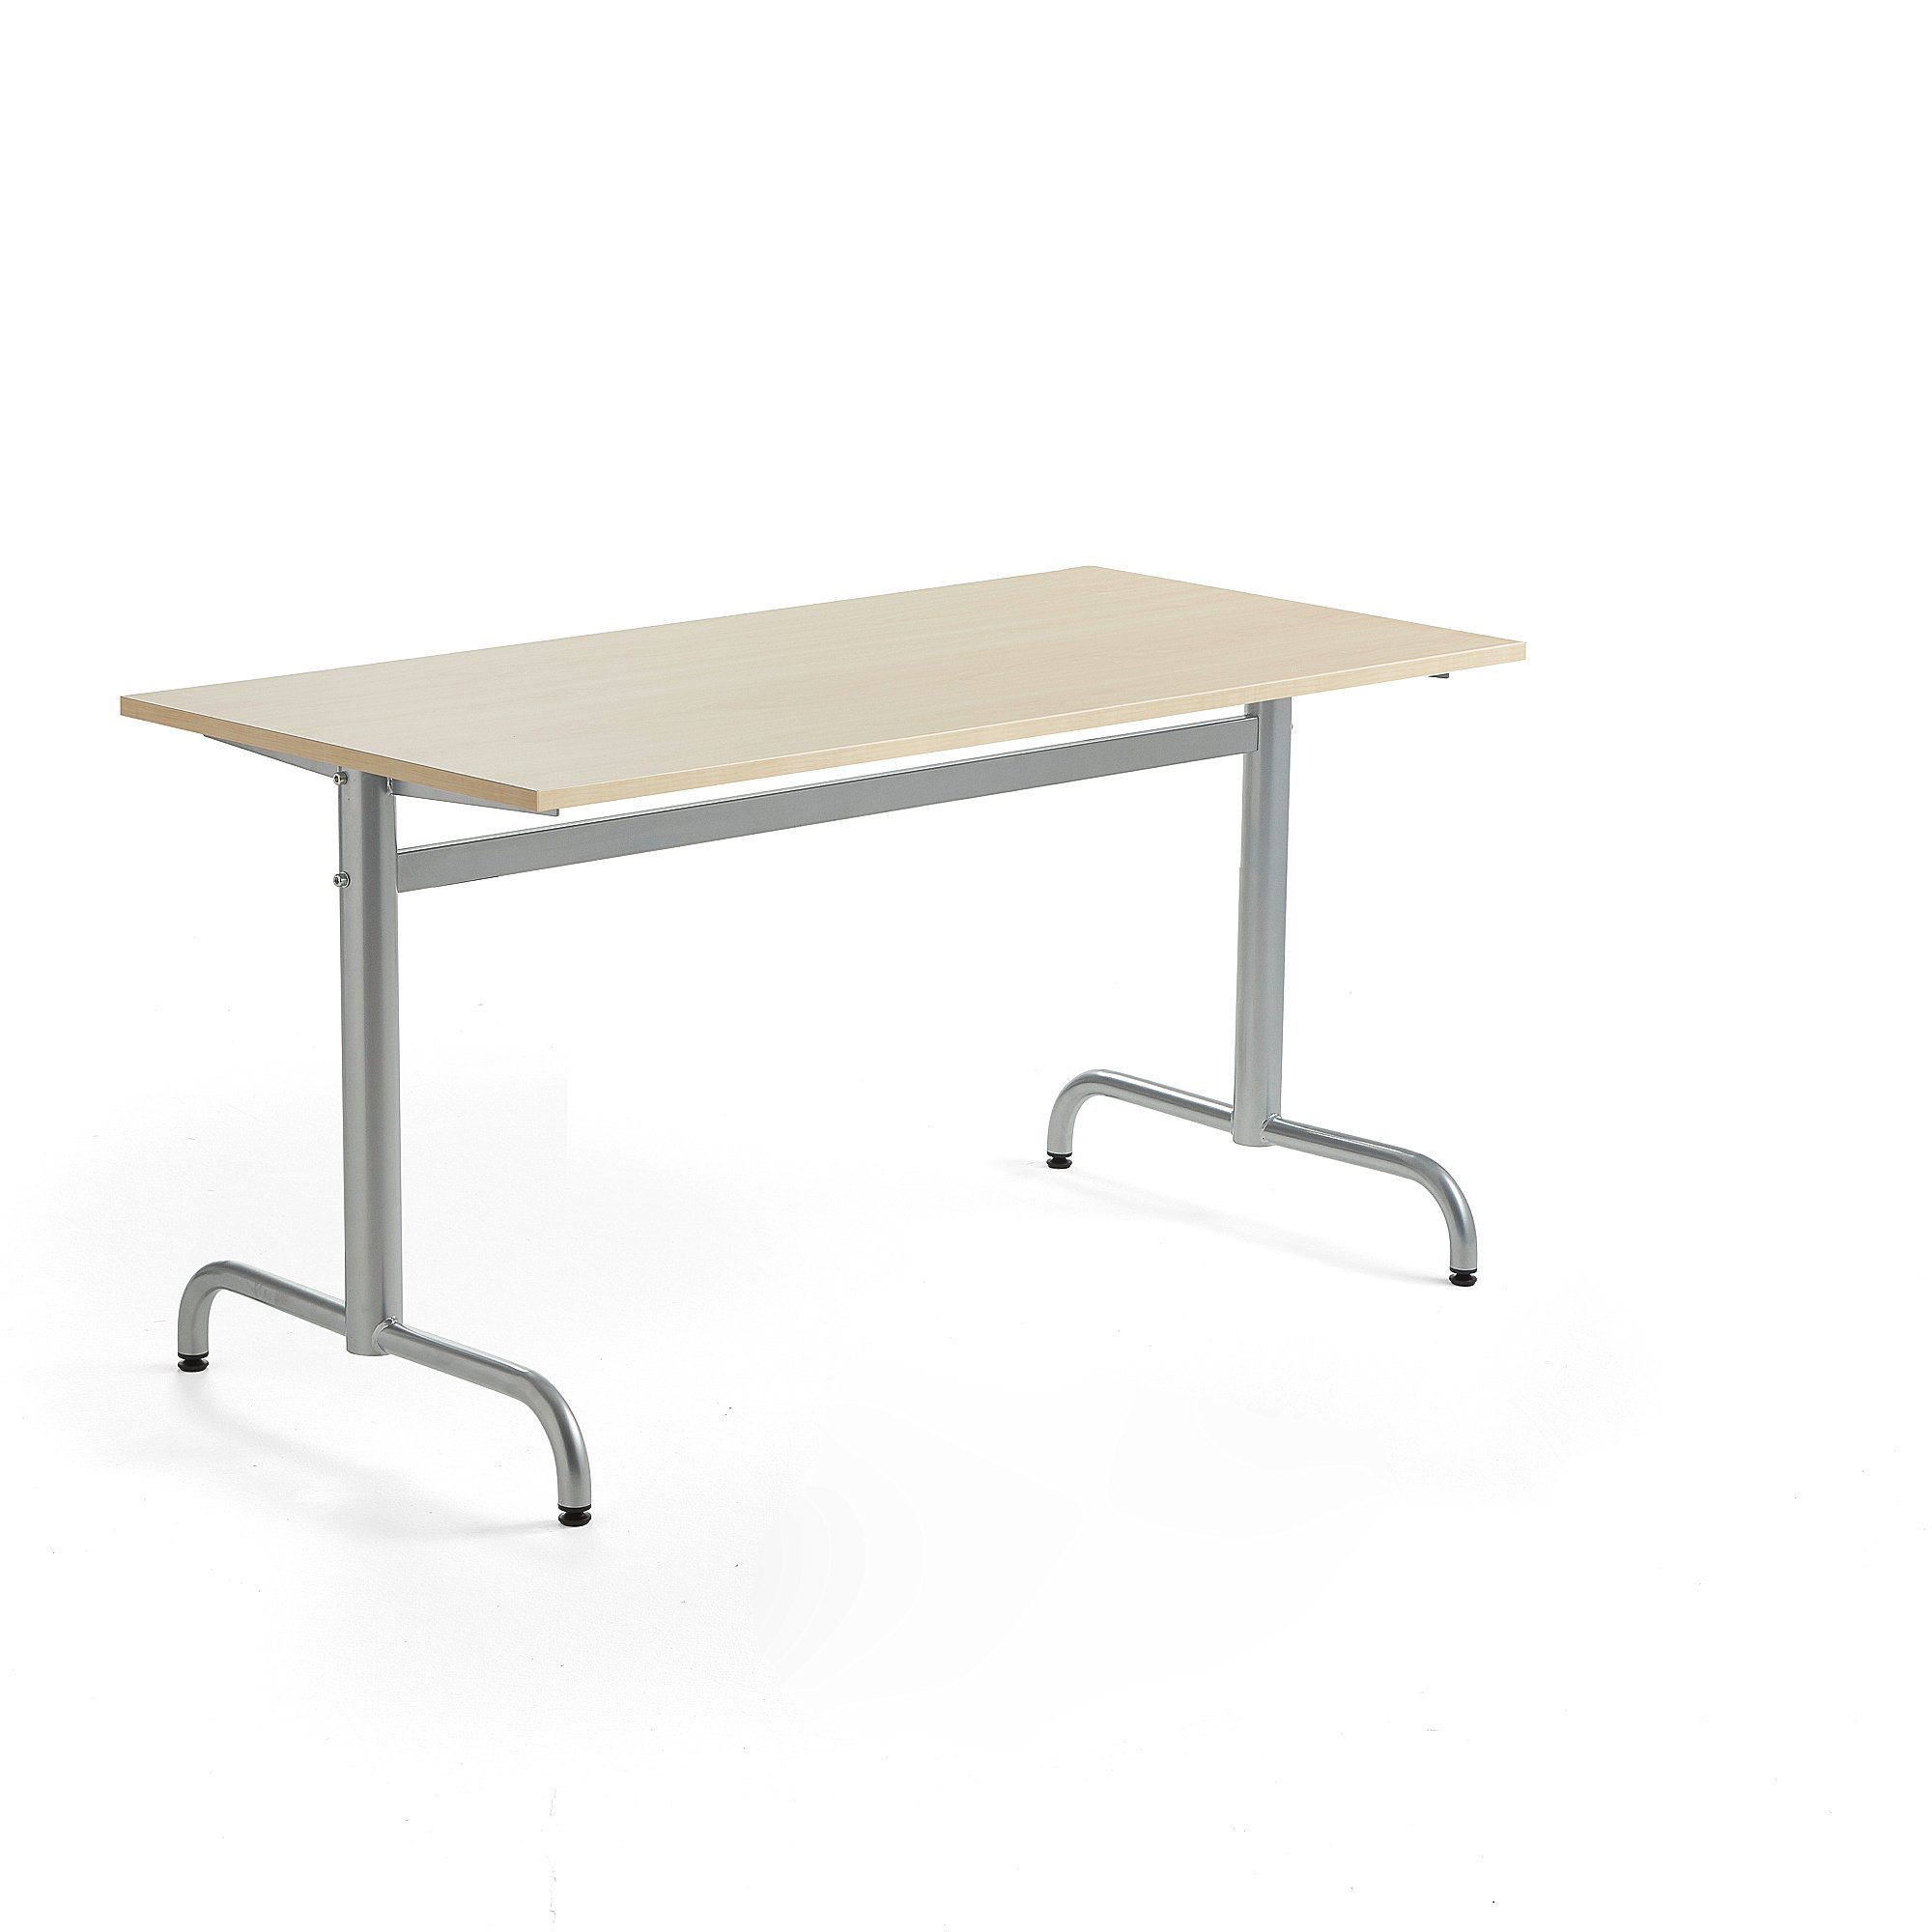 Stůl PLURAL, 1400x700x720 mm, HPL deska, bříza, stříbrná